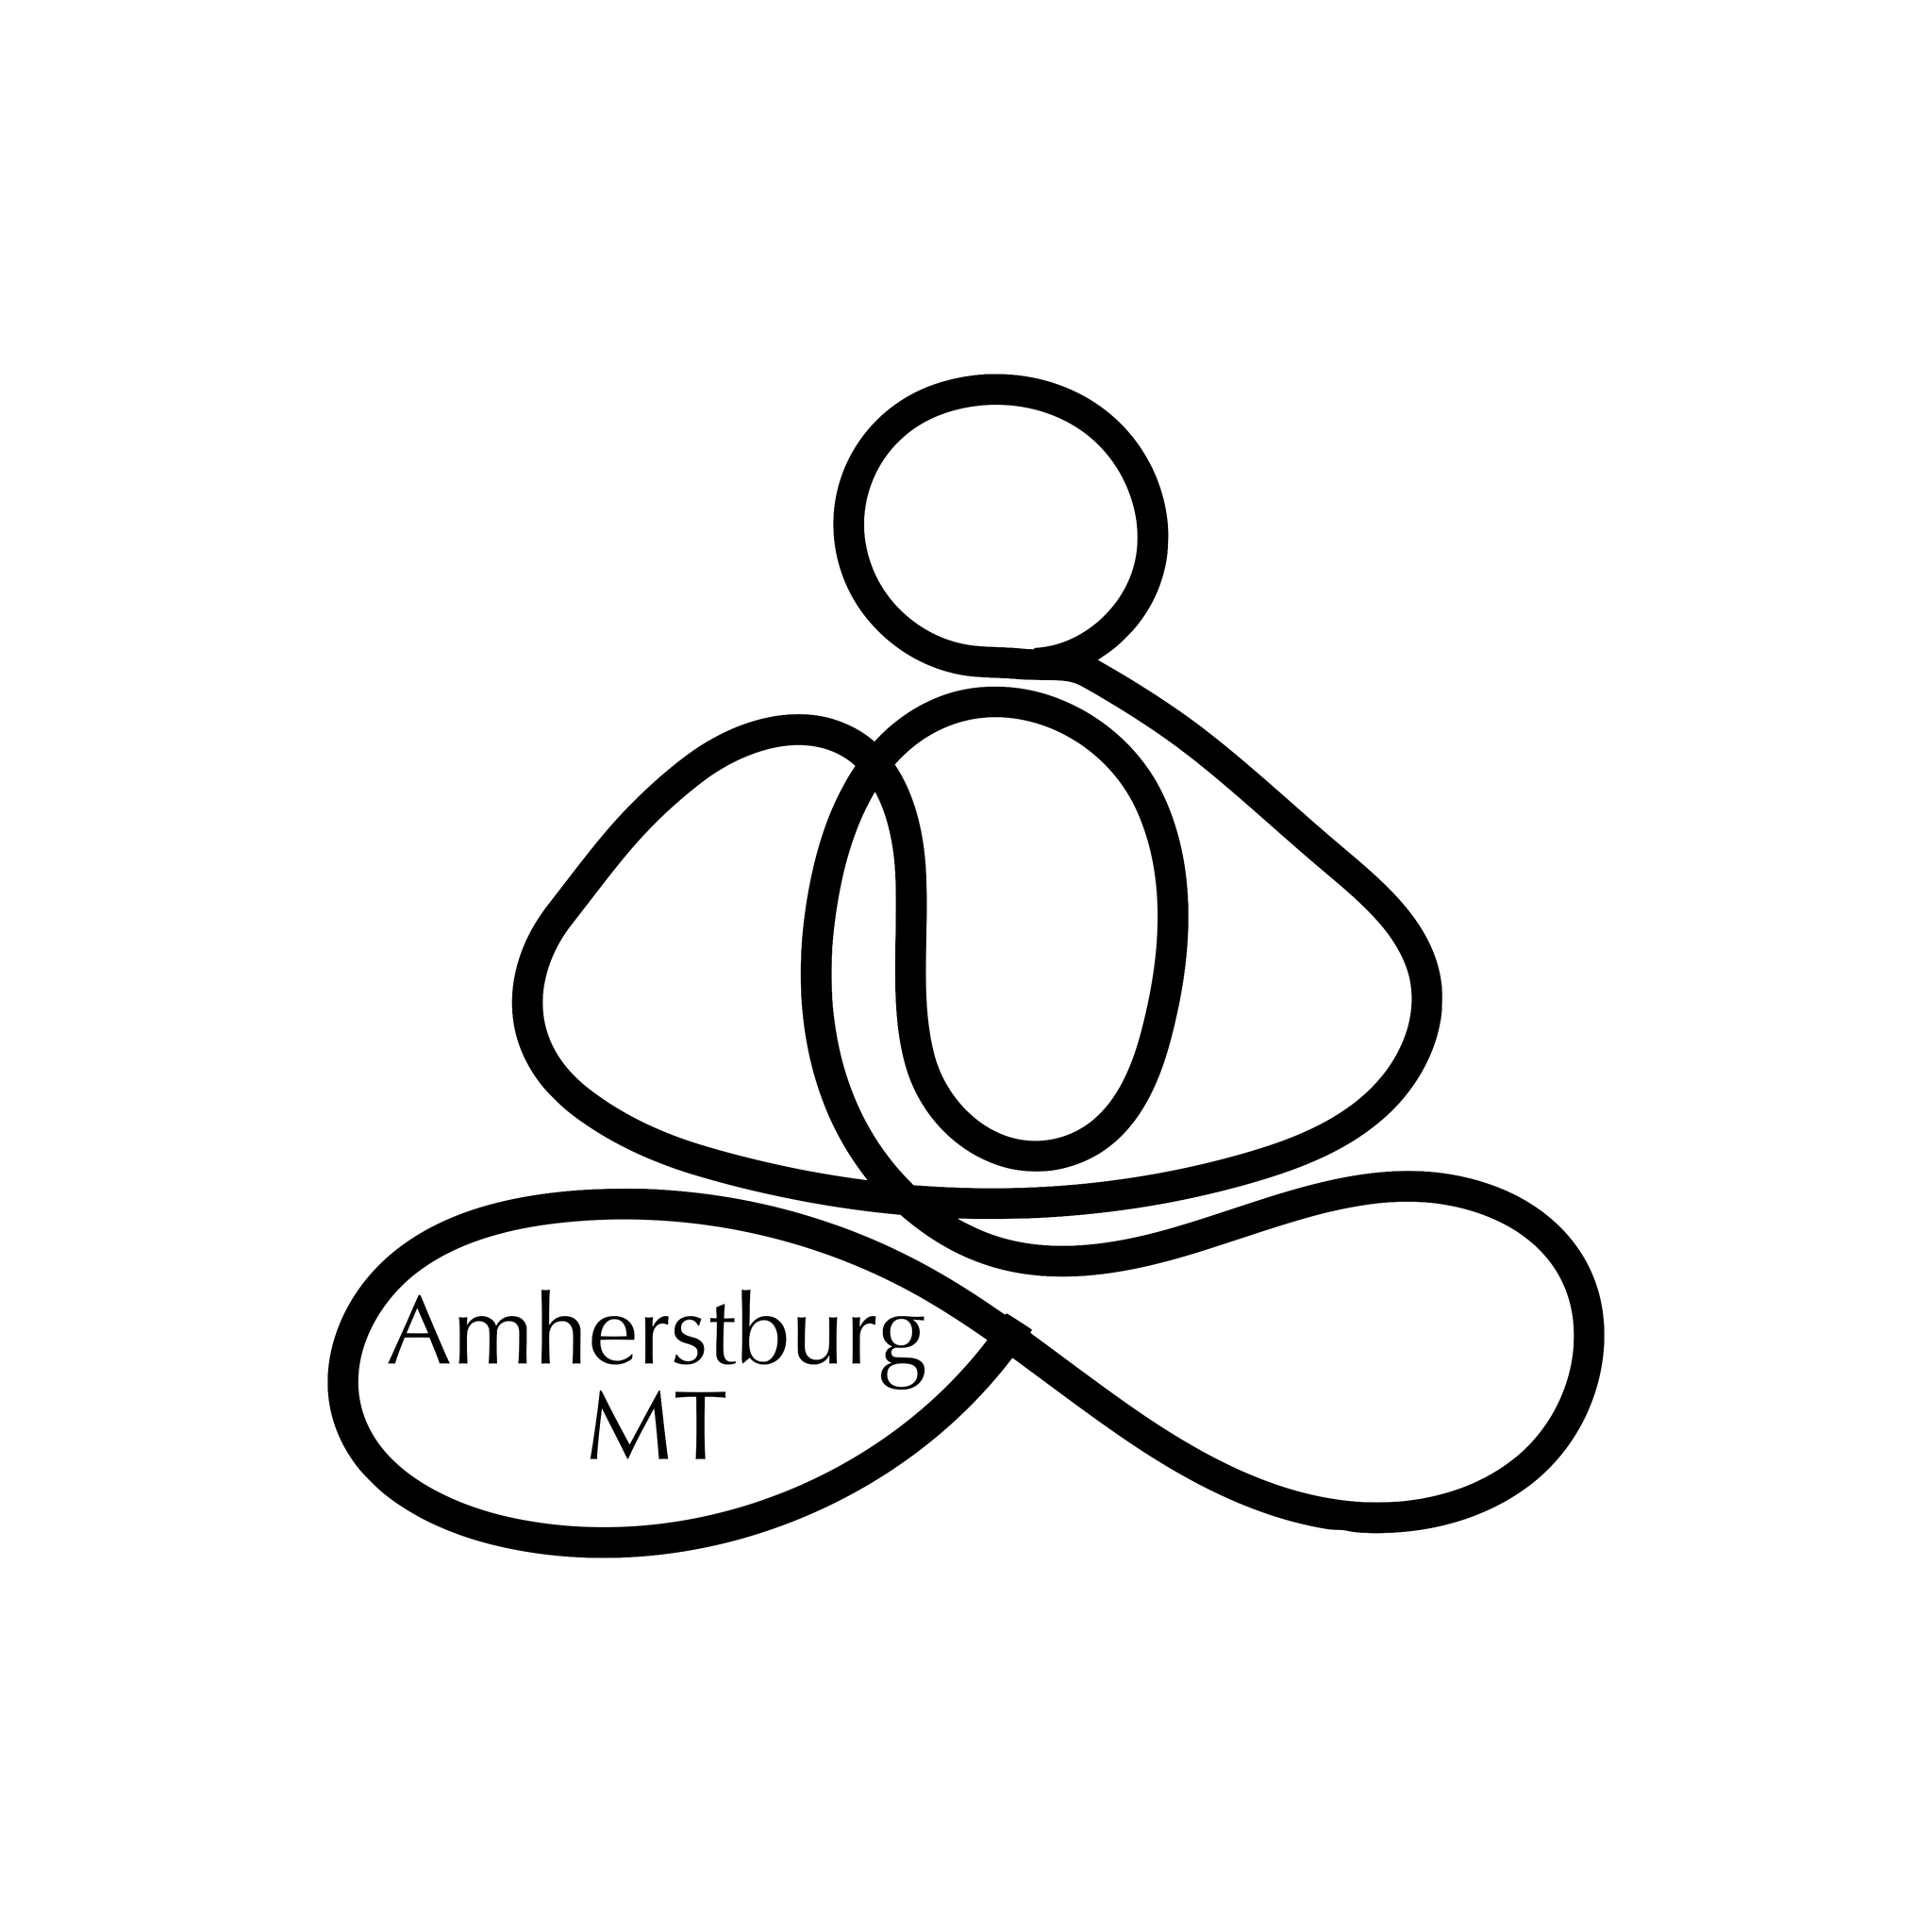 Amherstburg MT (Massage Therapy)